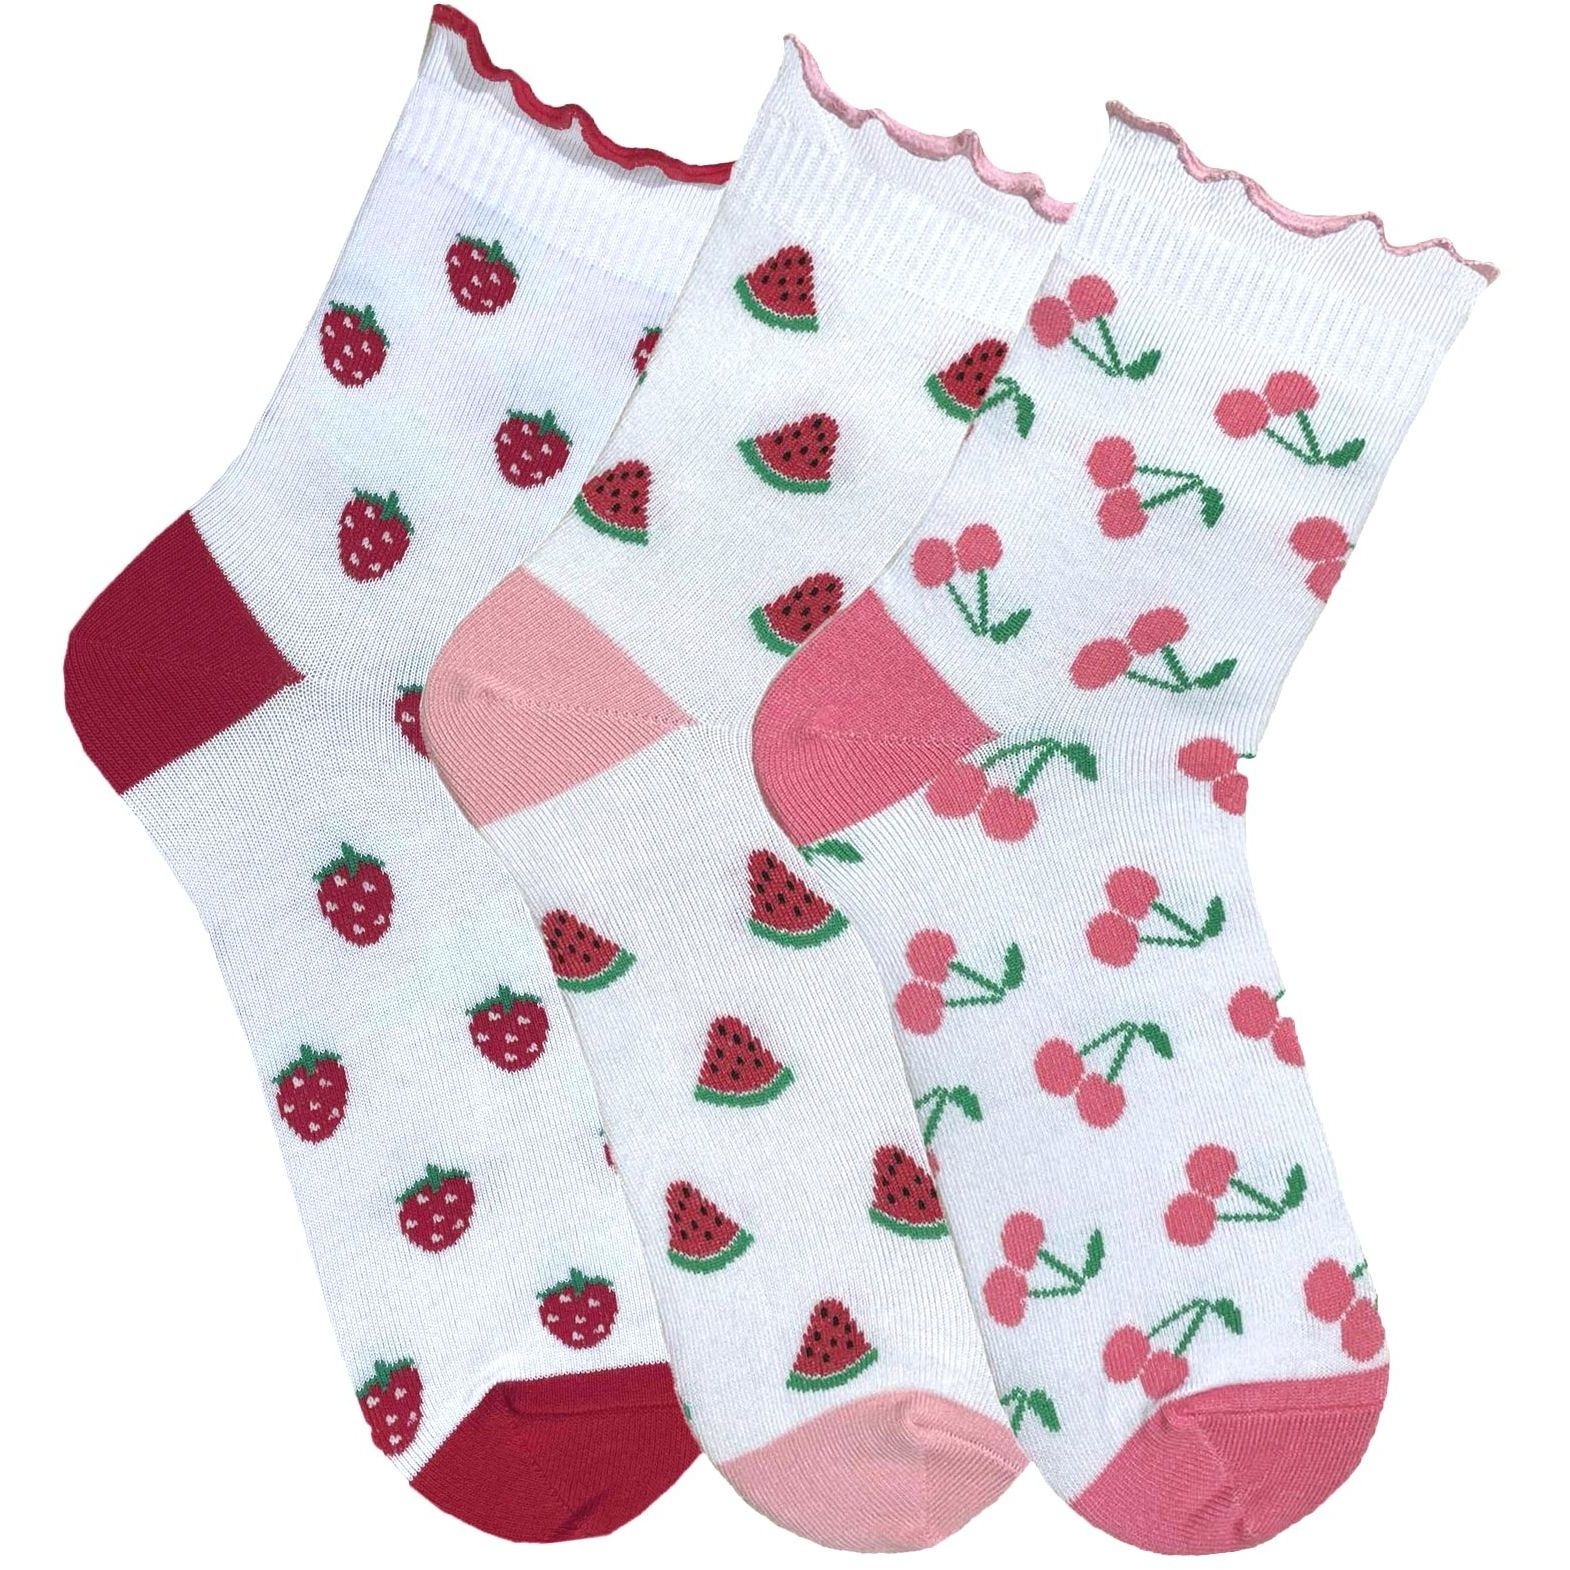 Набір жіночих шкарпеток Premier Socks 36-40 3 пари білі з принтом Ягоди (4820163319186)фото1